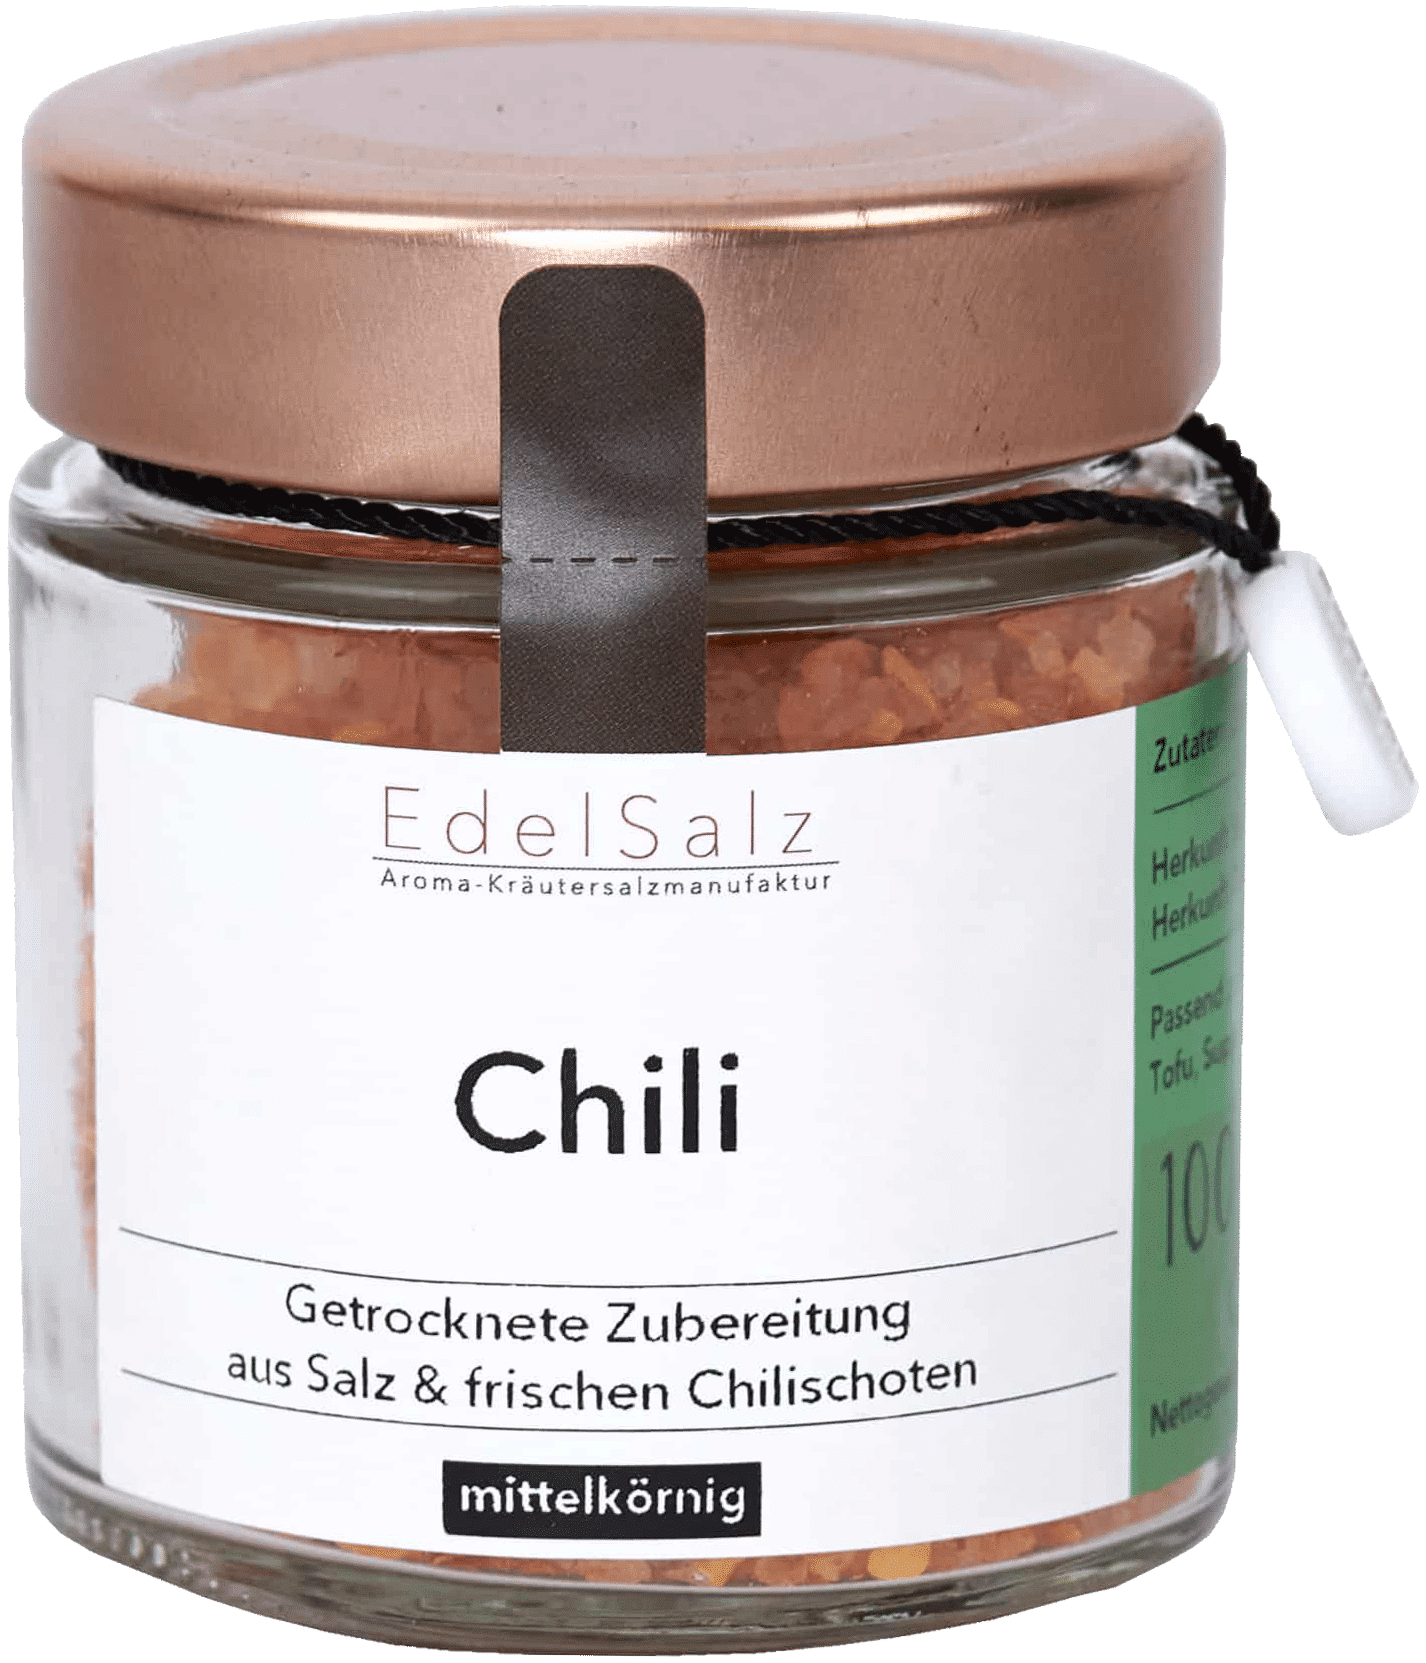 ChiliSalz kaufen mit Chilischoten & Steinsalz | Leni & Hans